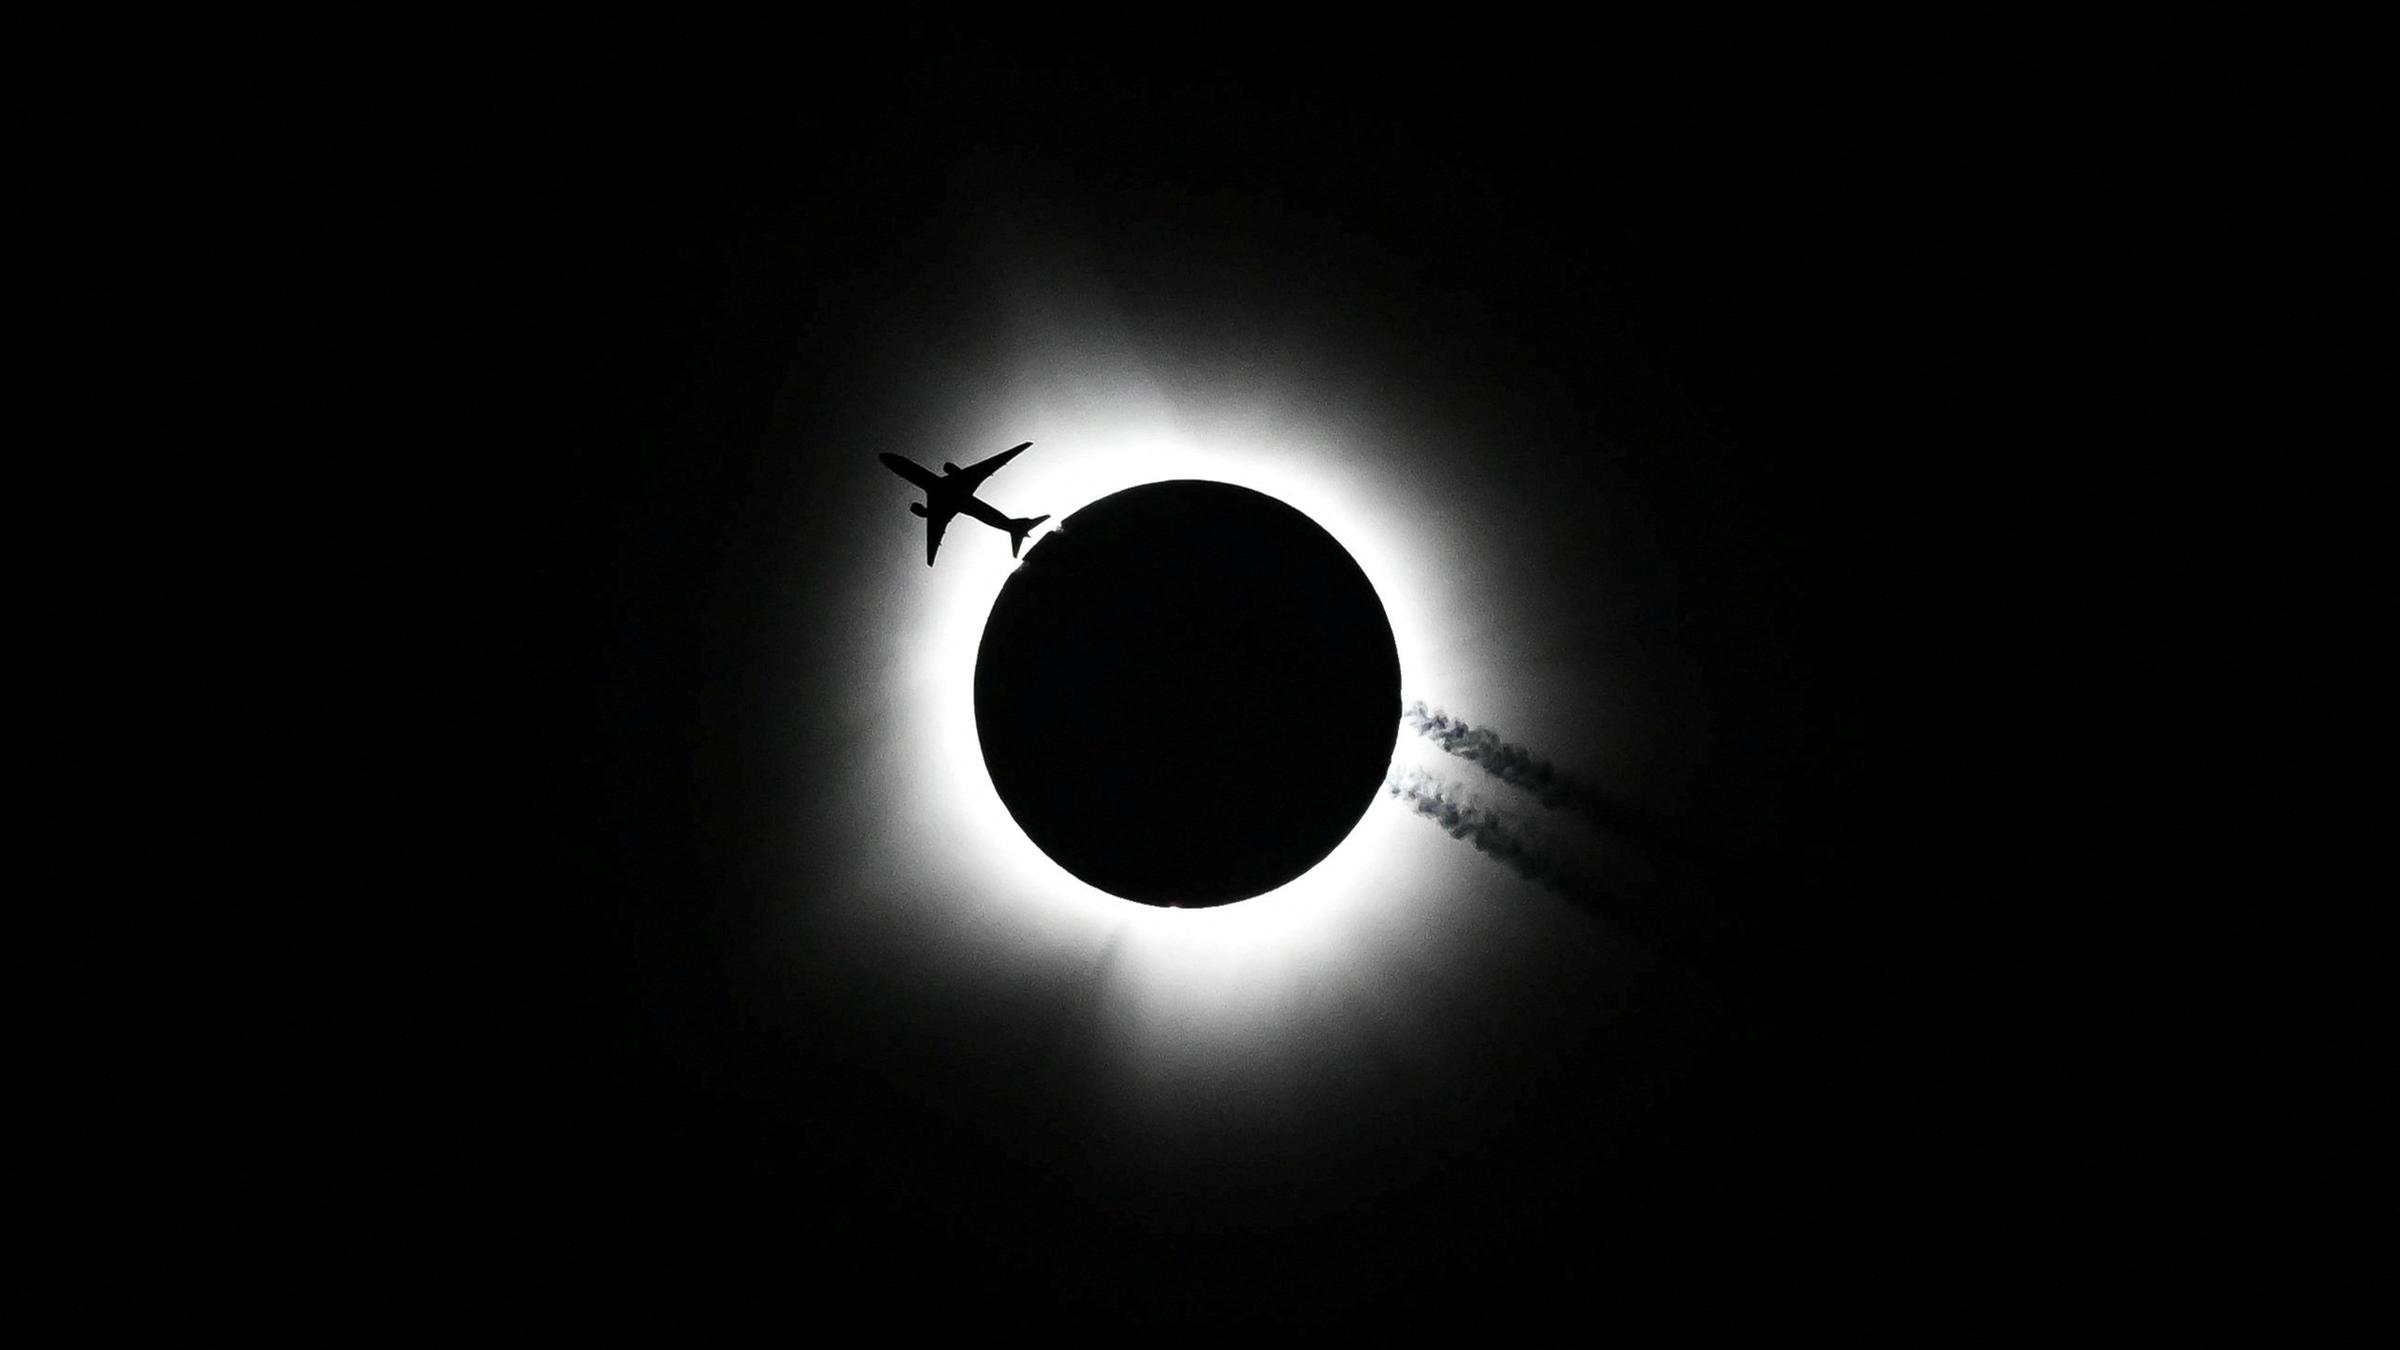 Ein Flugzeug fliegt vor der totalen Sonnenfinsternis im Himmel.